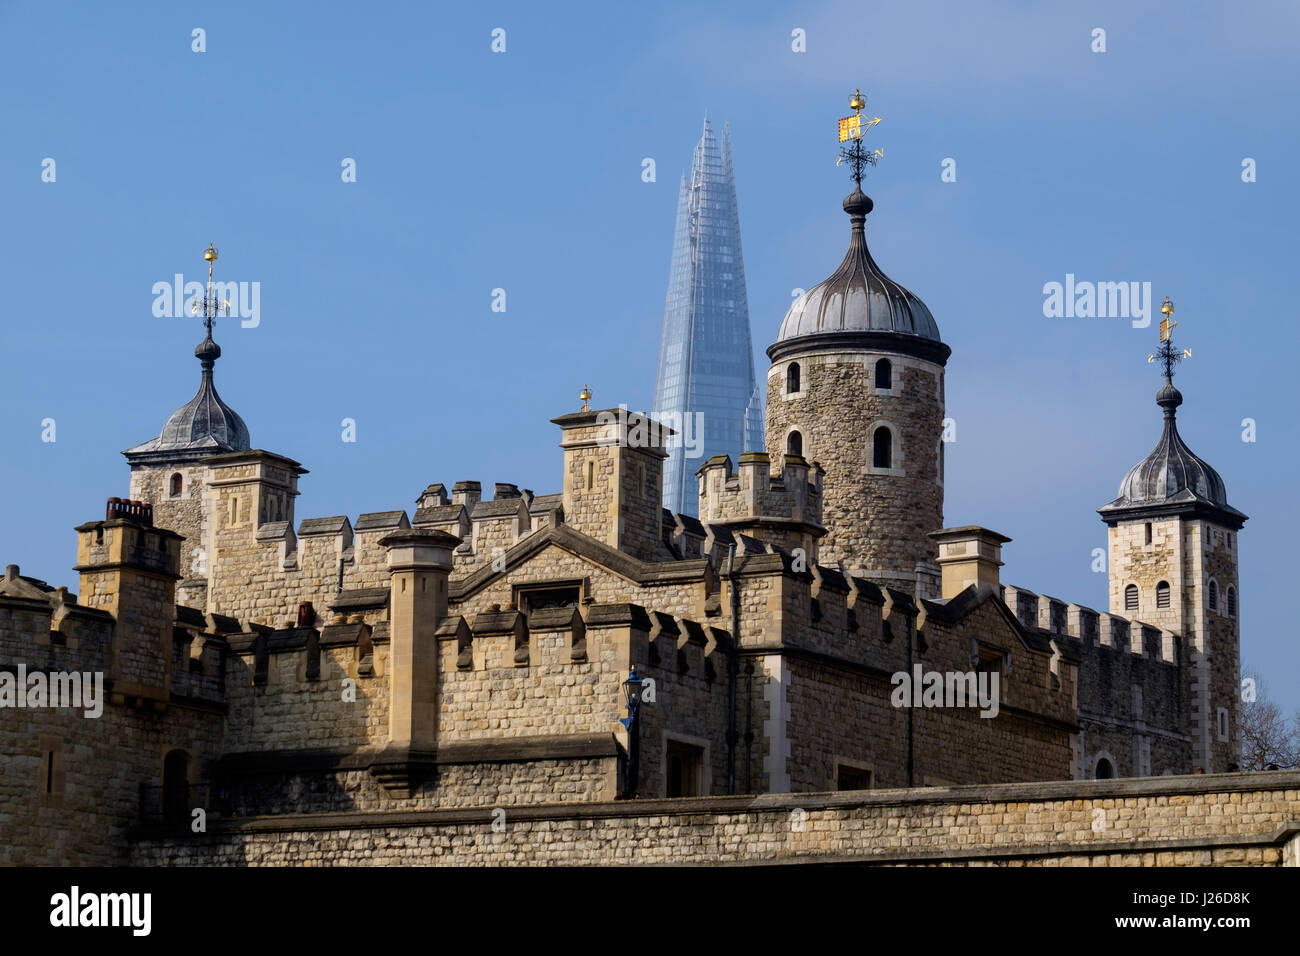 Tower von London mit dem Shard Hochhaus im Hintergrund, London, England, UK, Europa Stockfoto